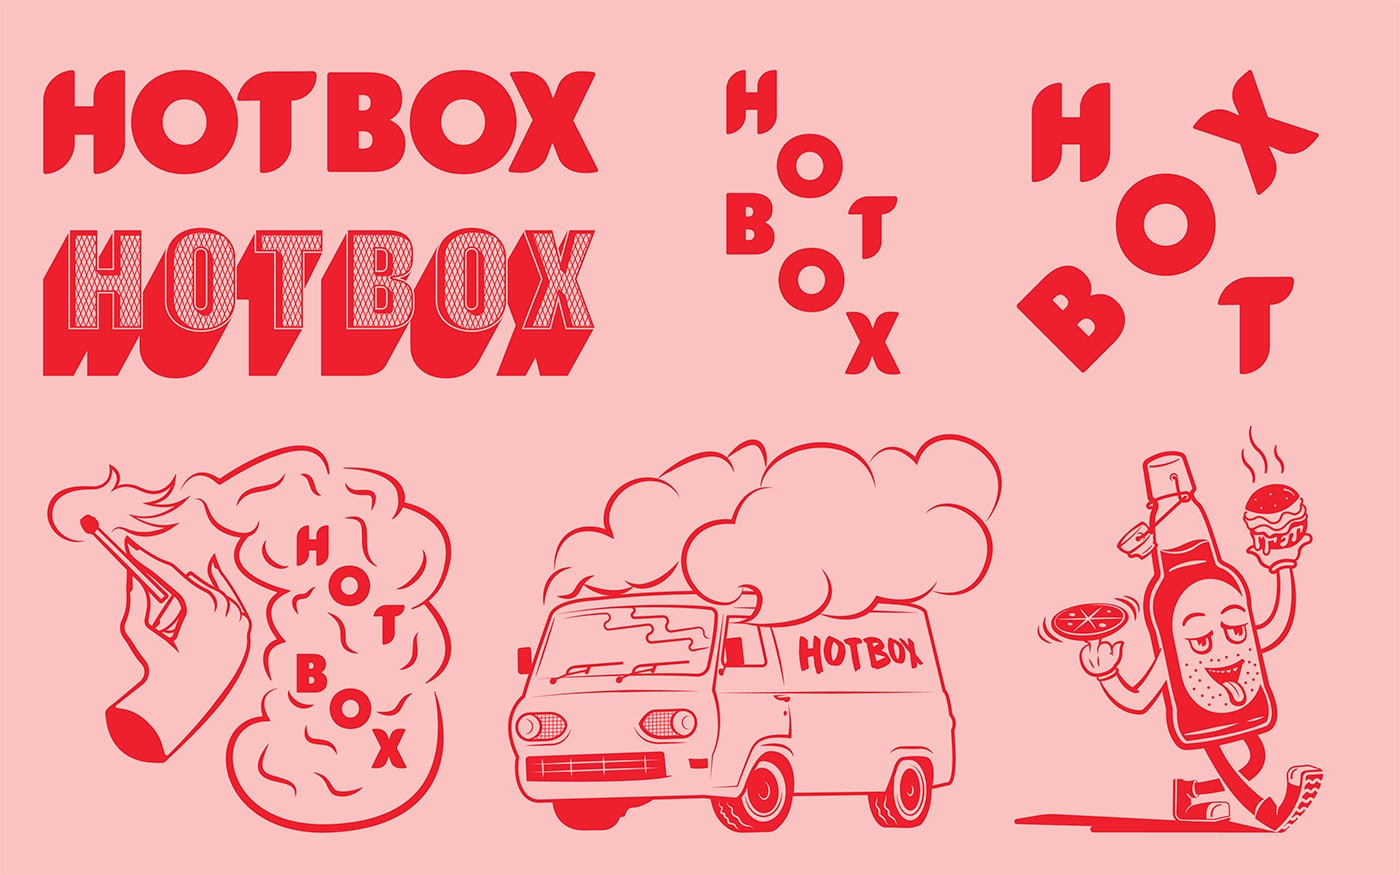 HotBox汉堡比萨餐厅品牌形象设计